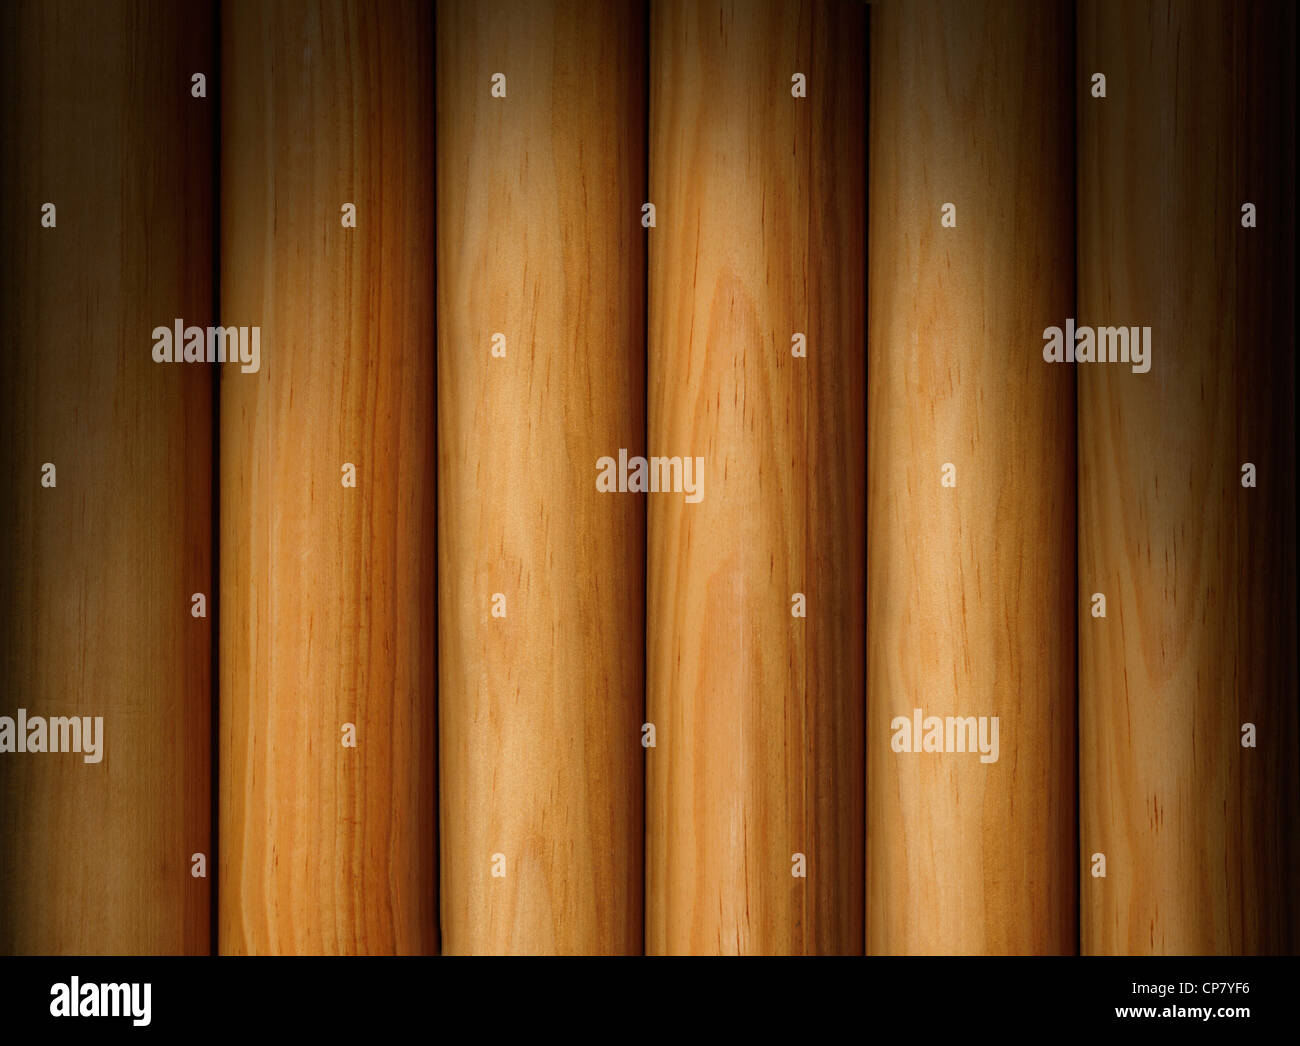 Poteaux en bois formant une texture d'arrière-plan éclairé de façon spectaculaire au-dessus Banque D'Images